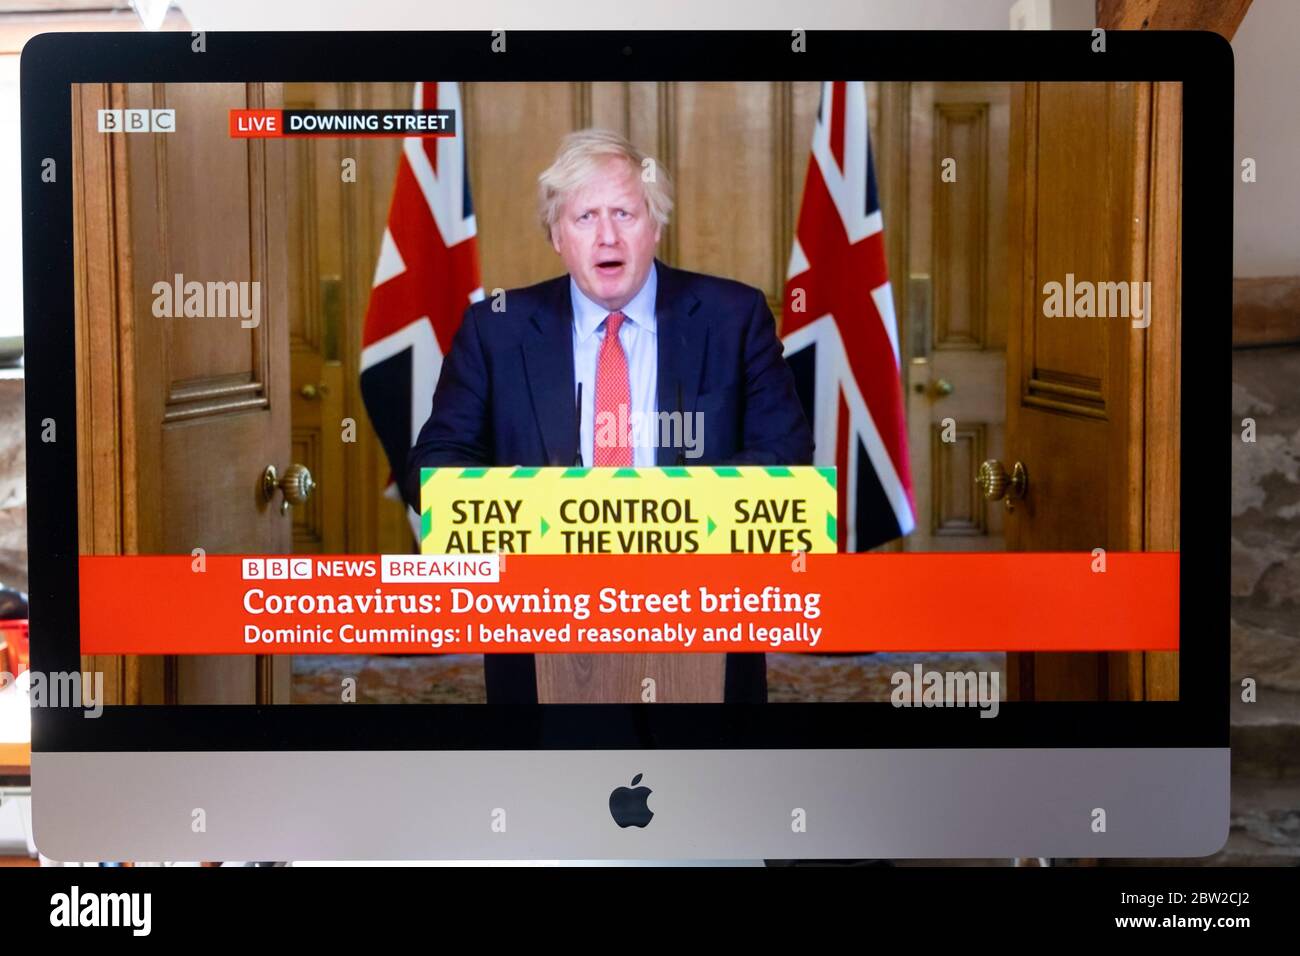 Immagine televisiva dello schermo del computer di Boris Johnson briefing dopo Dominic Cummings comunicato BBC News Downing Street London UK 25 maggio 2020 Foto Stock